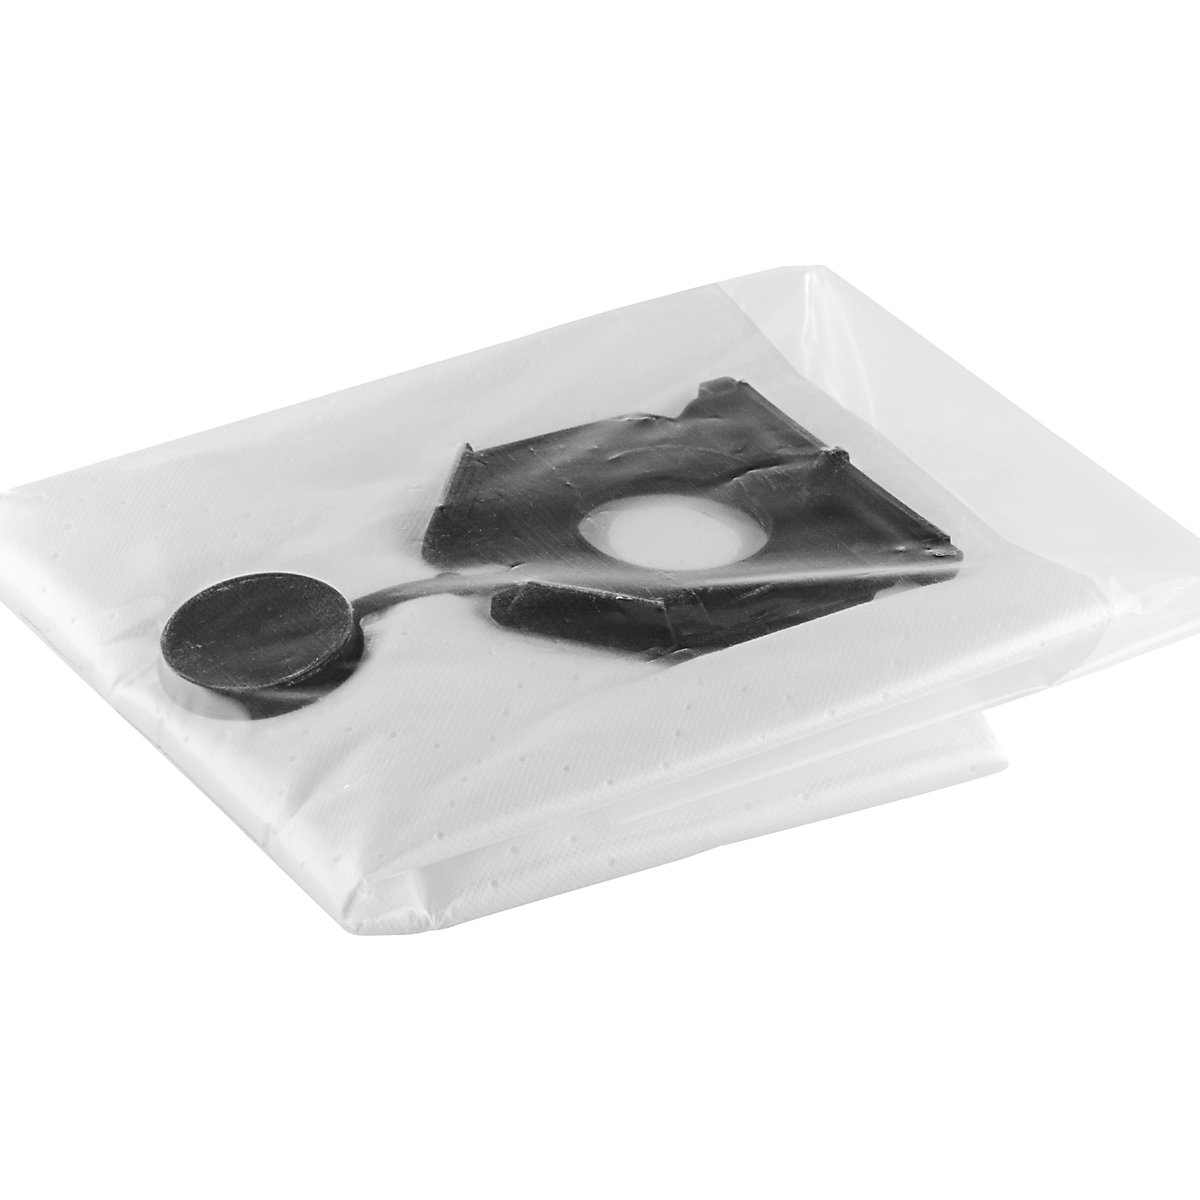 Varnostna filtrska vreča – Kärcher, NT 30/1, DE 5 kosov, bele barve, od 2 DE